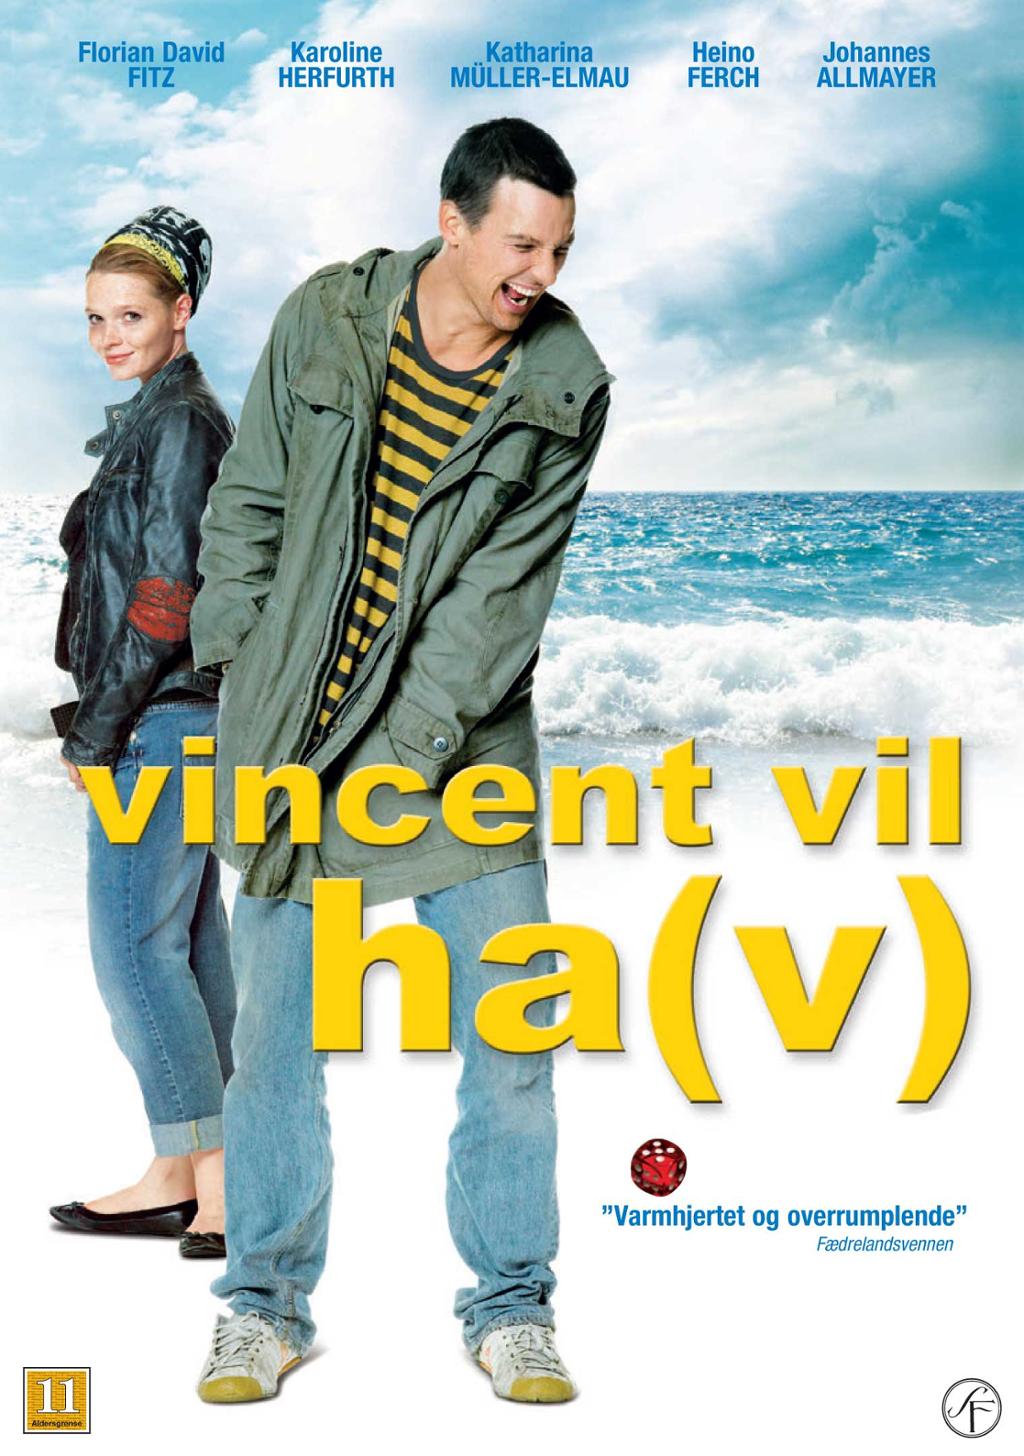 Filmplakat til filmen Vincent vil ha(v). Foto.